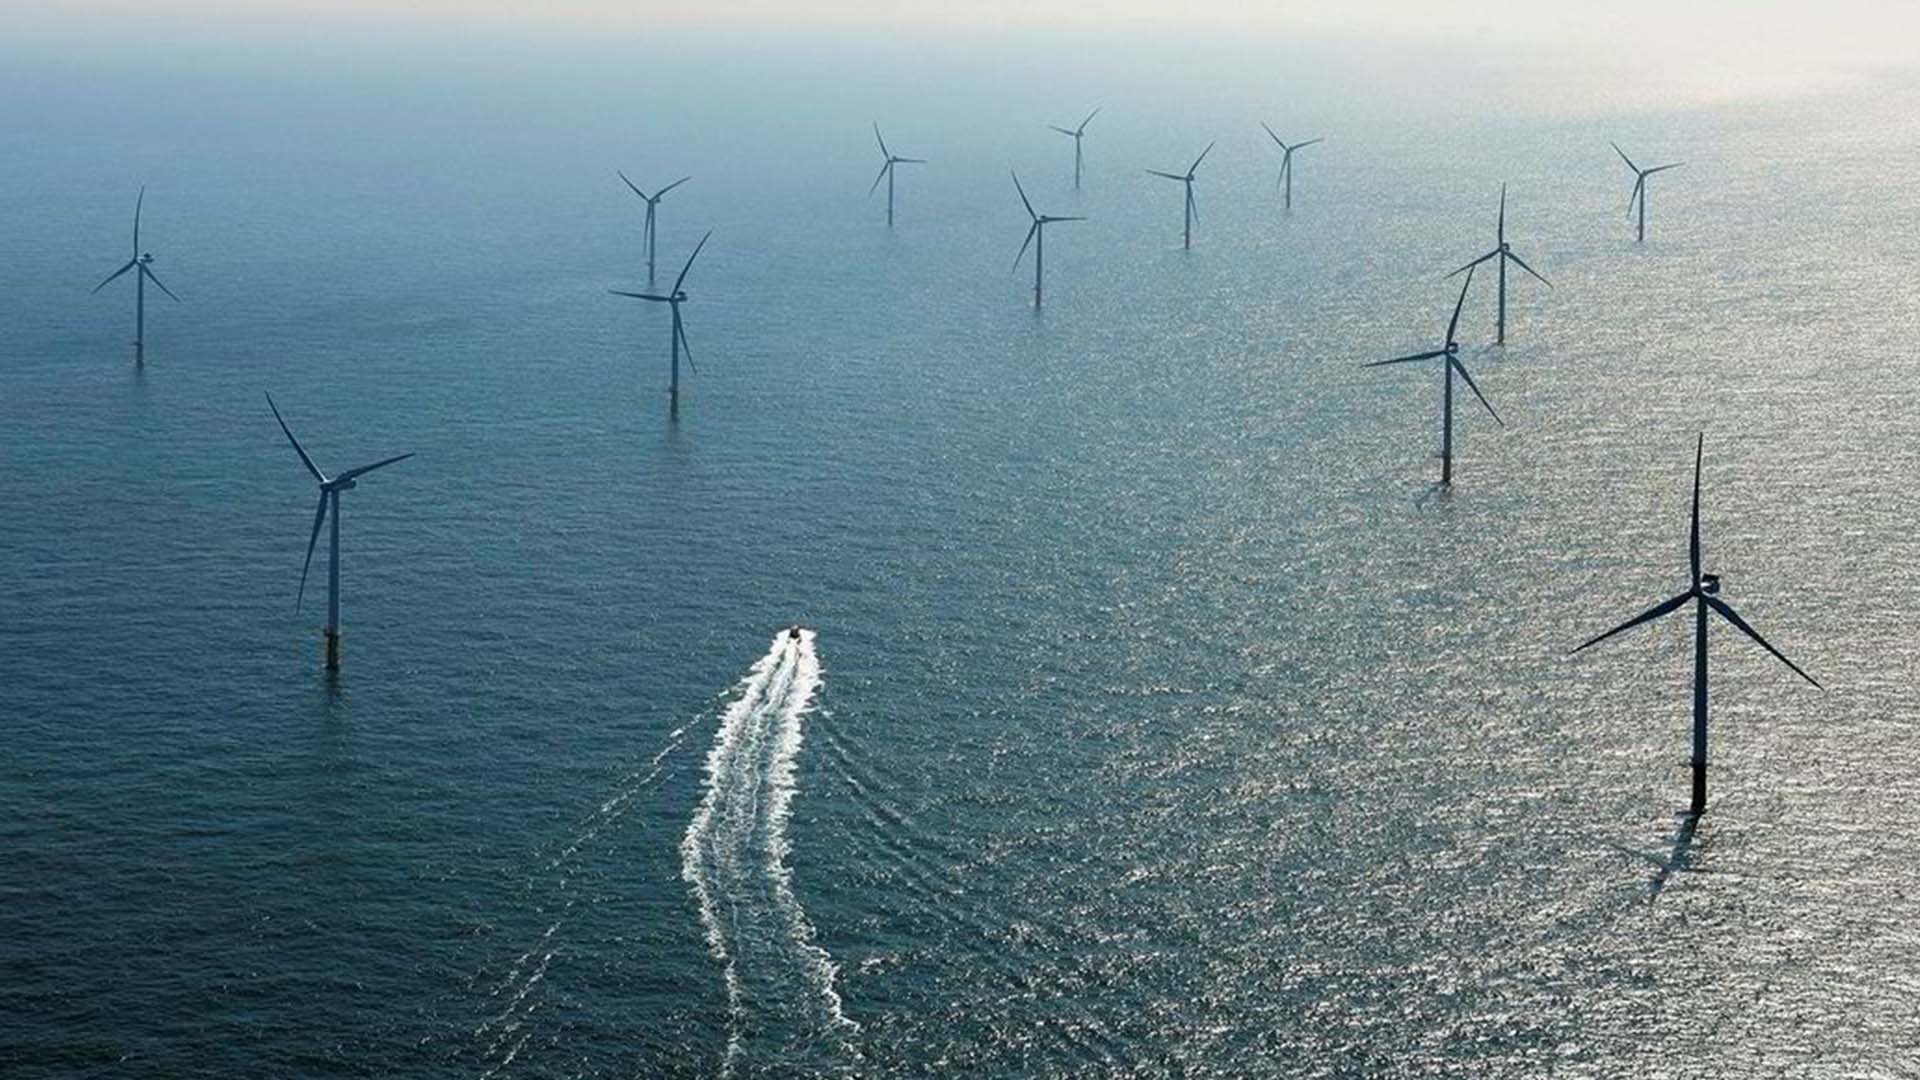 Offshore wind farm in Belgium's North Sea